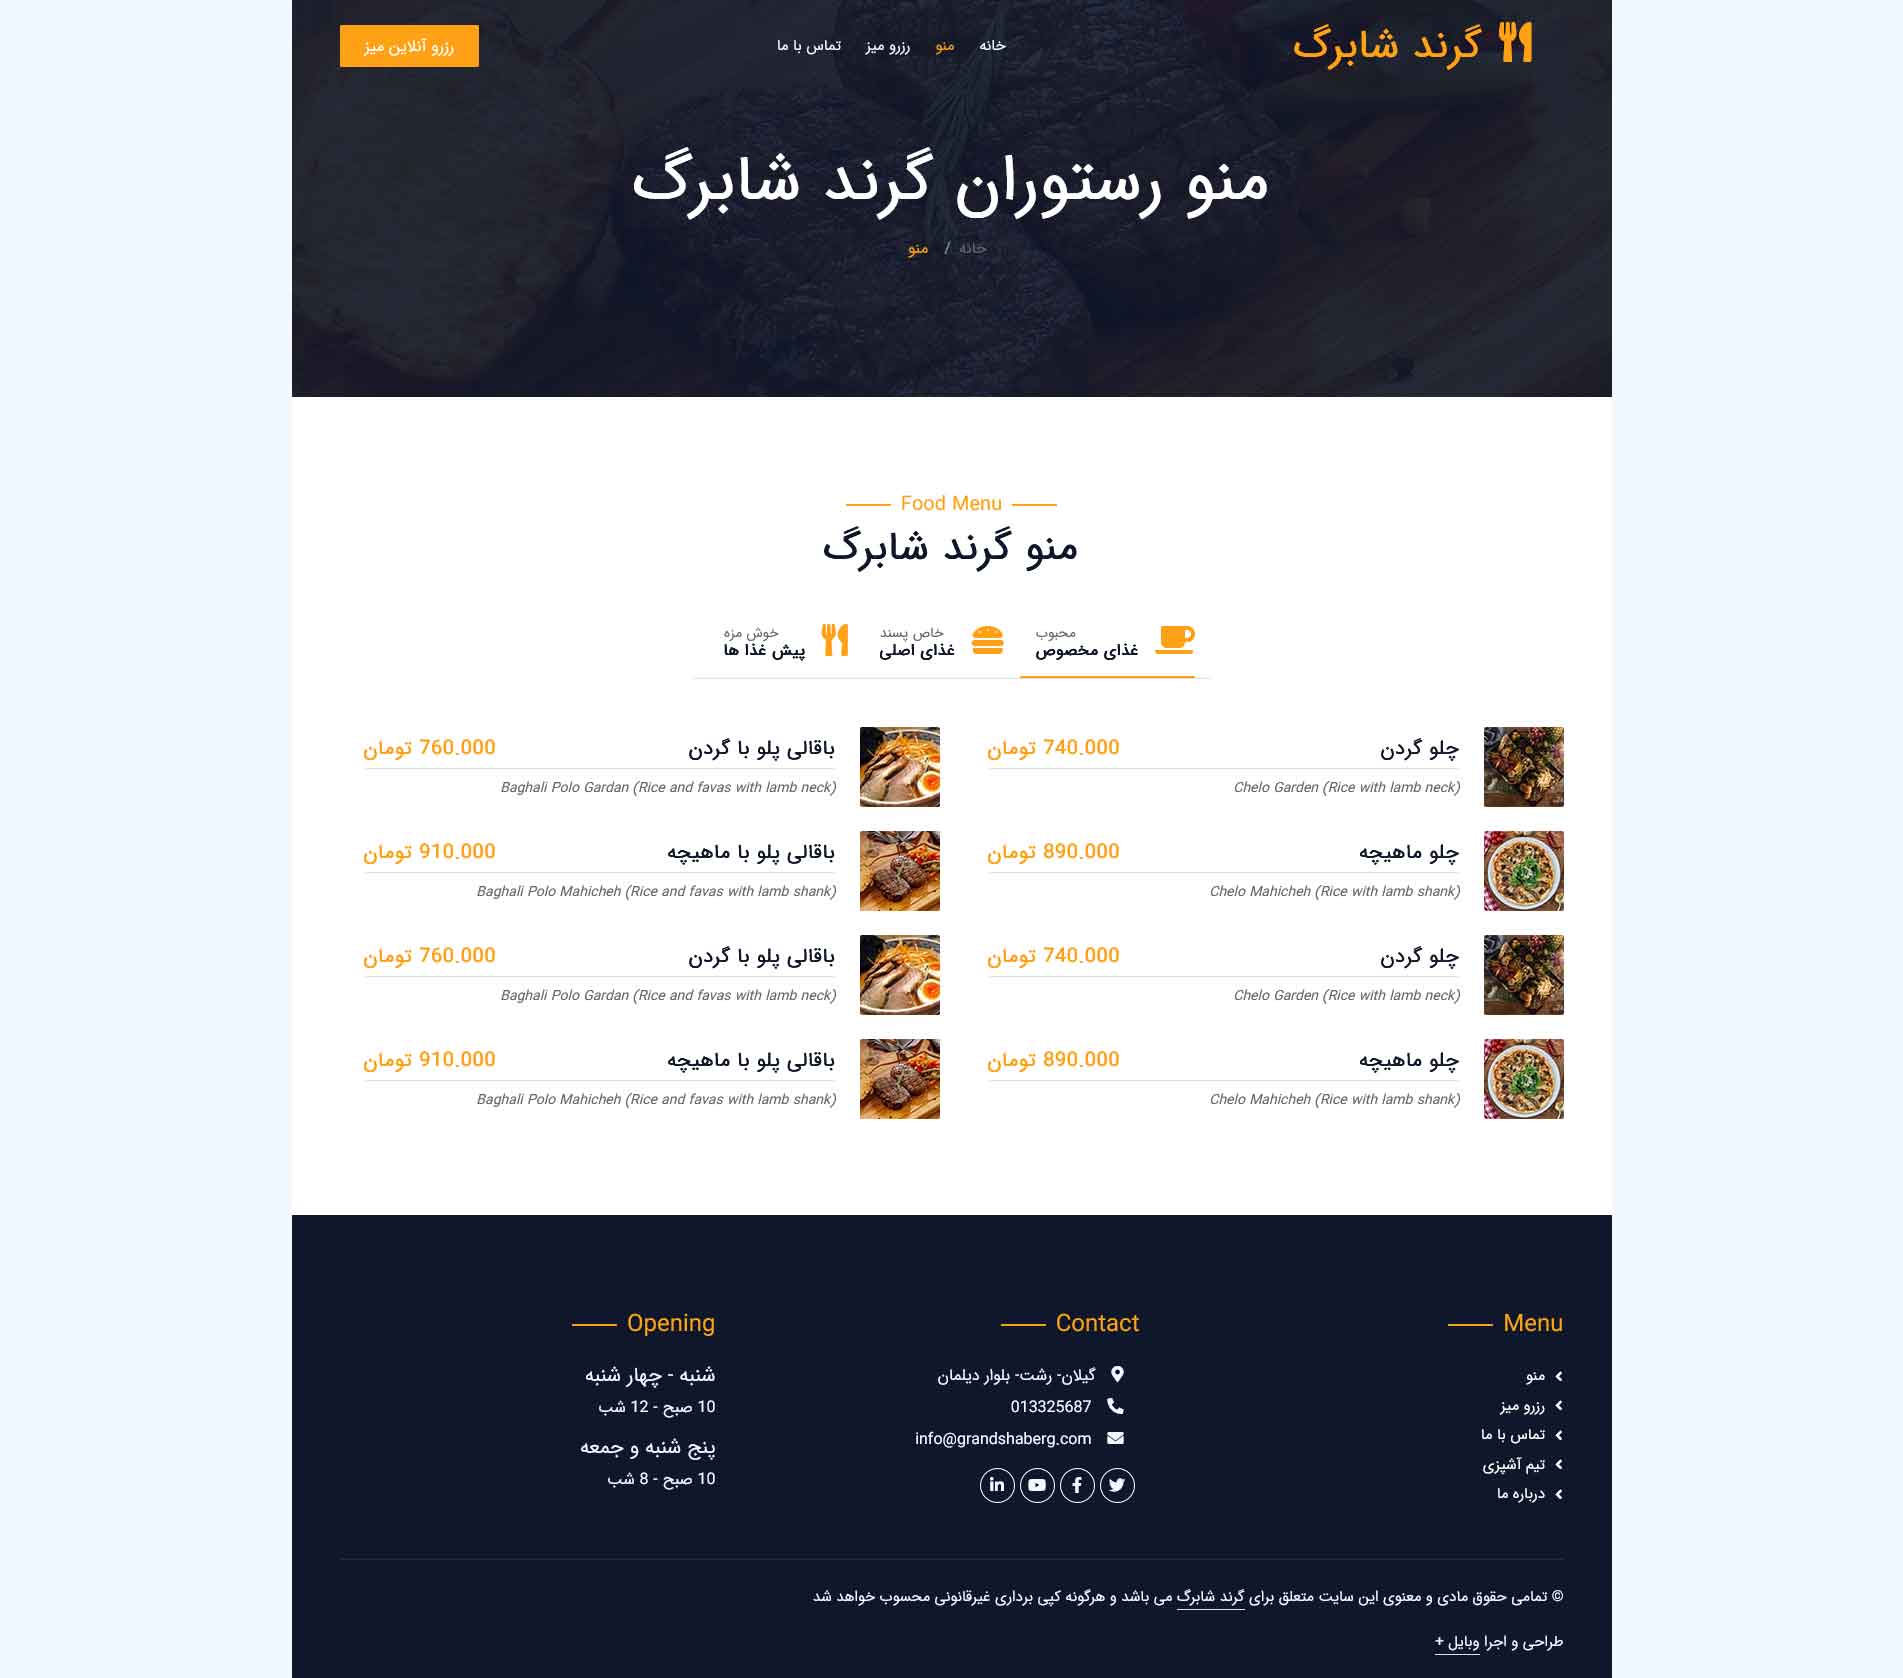 صفحه اختصاصی منو:
صفحه نمایش کامل منو رستوران به همراه قیمت و نام غذا،
دسته بندی غذا ها ، نمایش عکس کوچک غذا